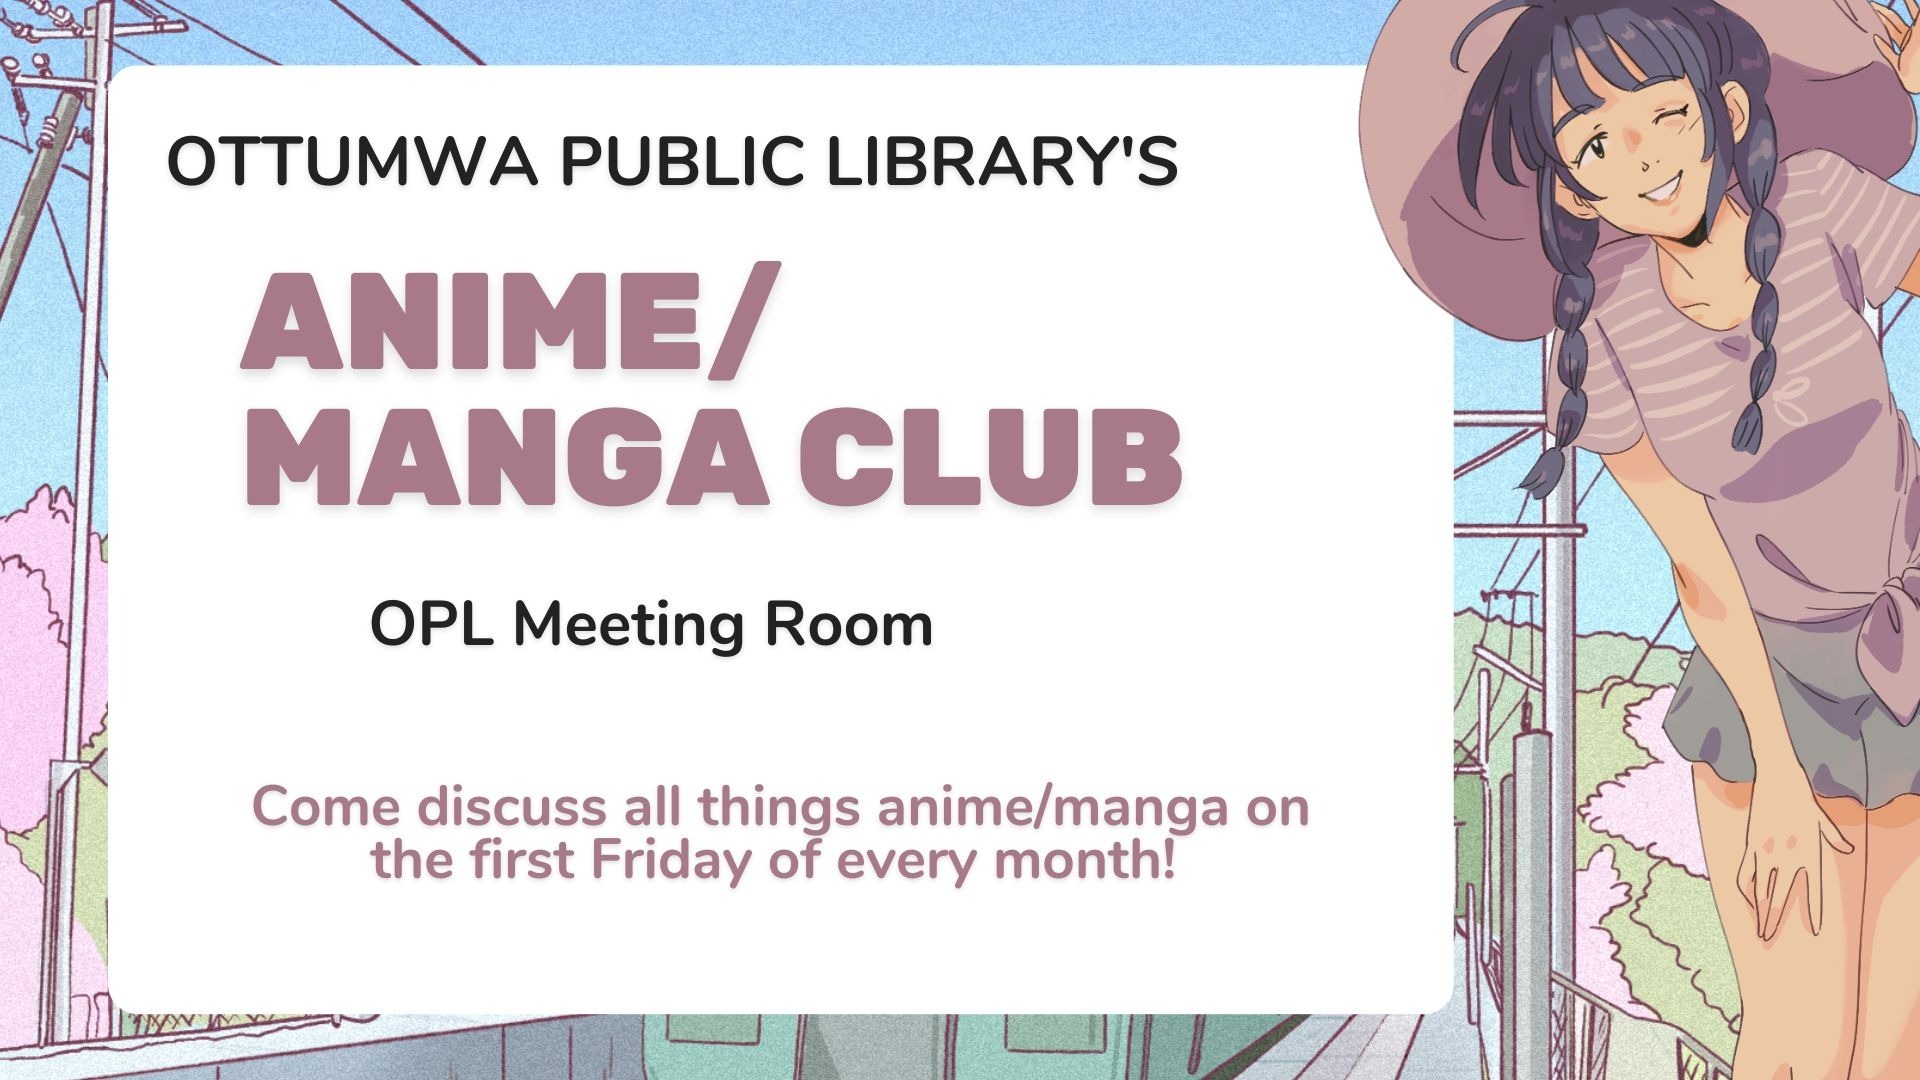 Teen Anime/Manga Club